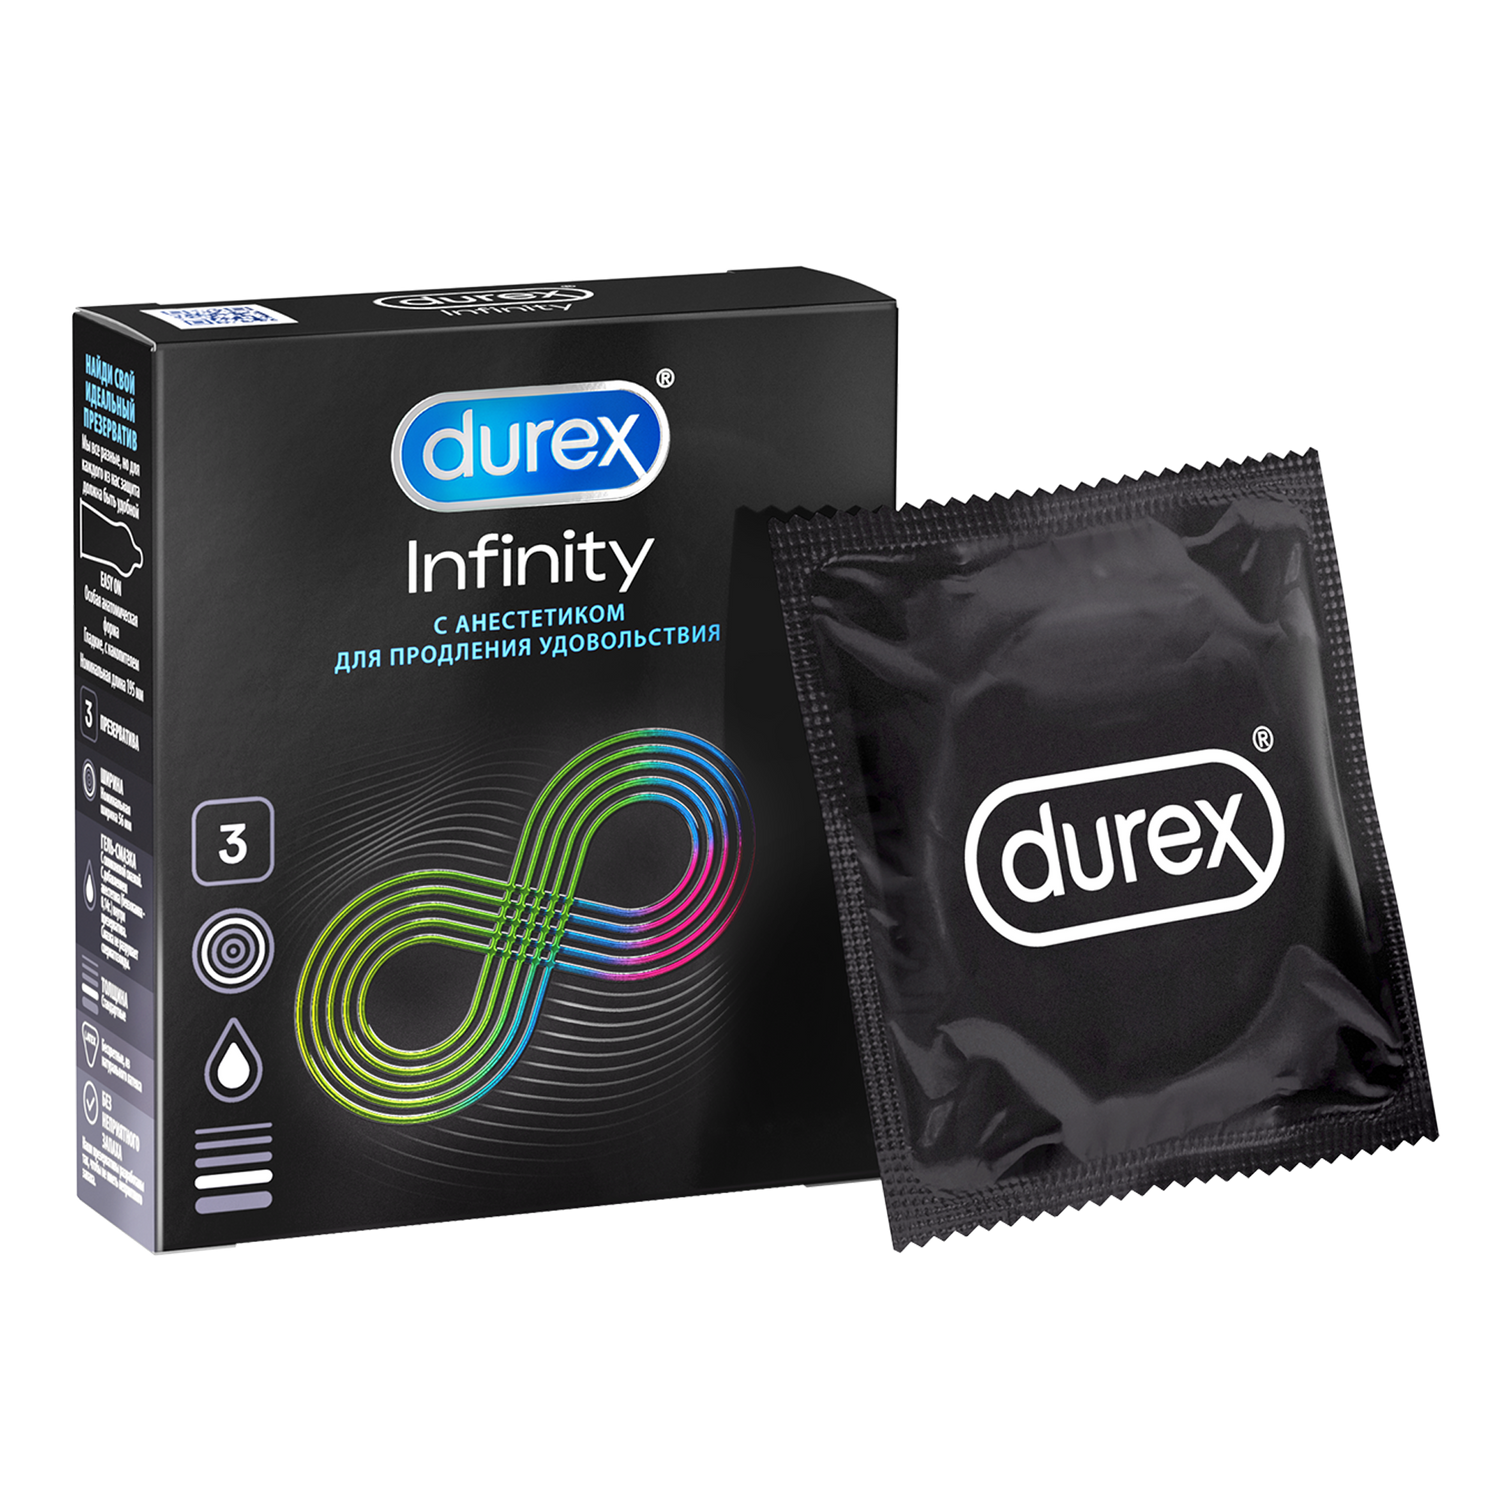 Презервативы Durex Infinity с анестетиком гладкие, 3 шт. презервативы durex dual extase рельефные с анестетиком 3 шт